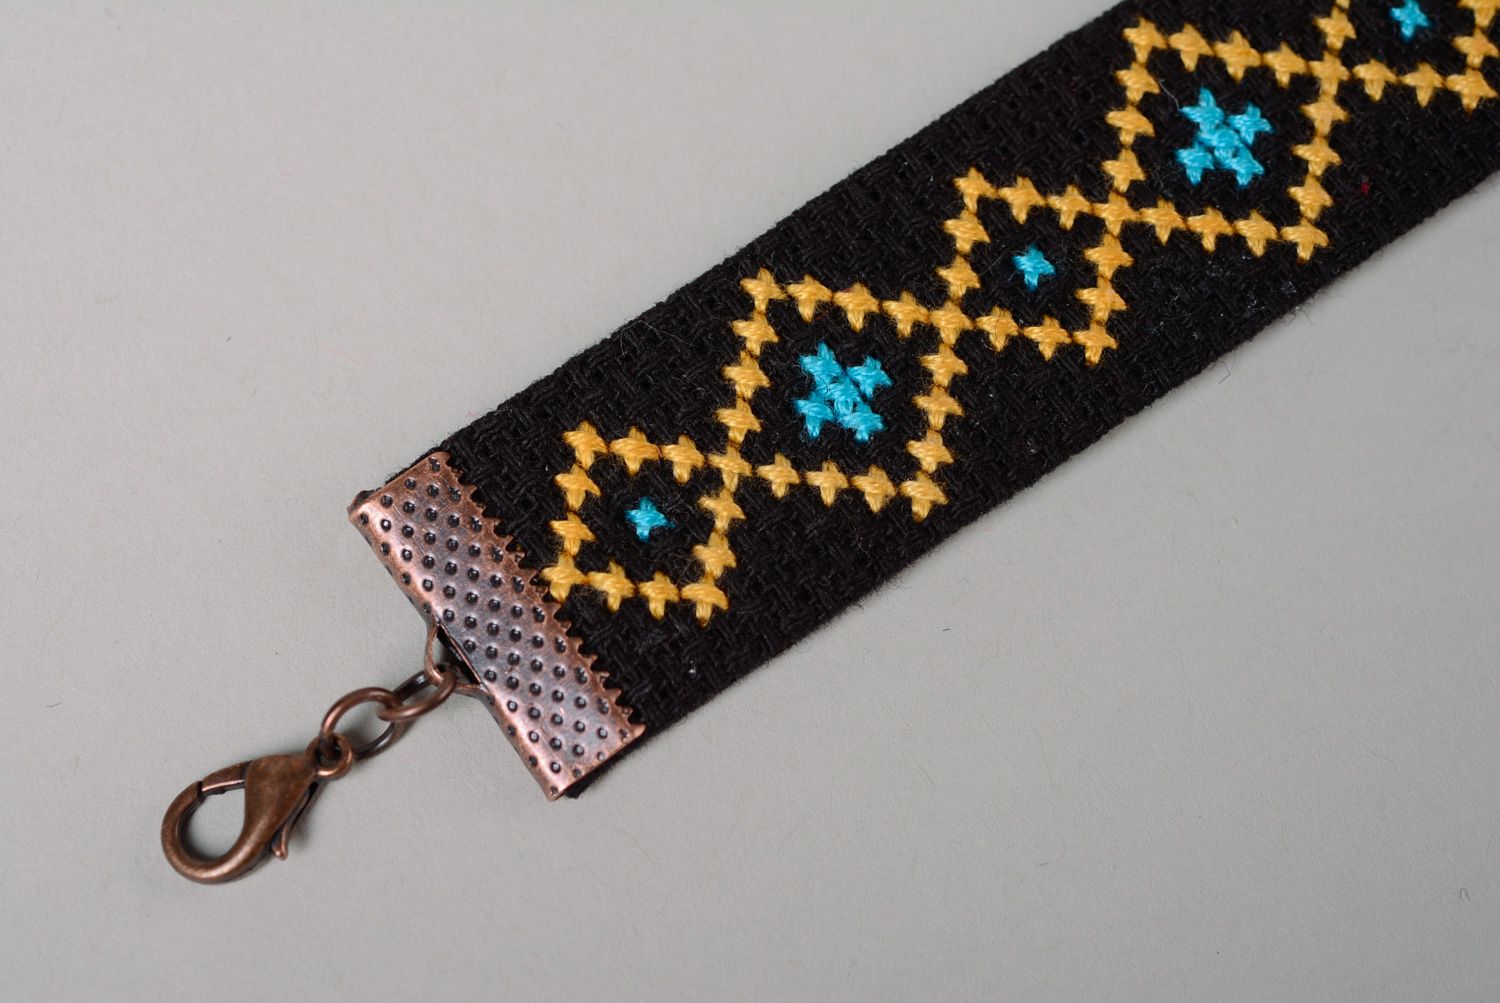 Textil Armband mit Kreuzstichstickerei foto 3